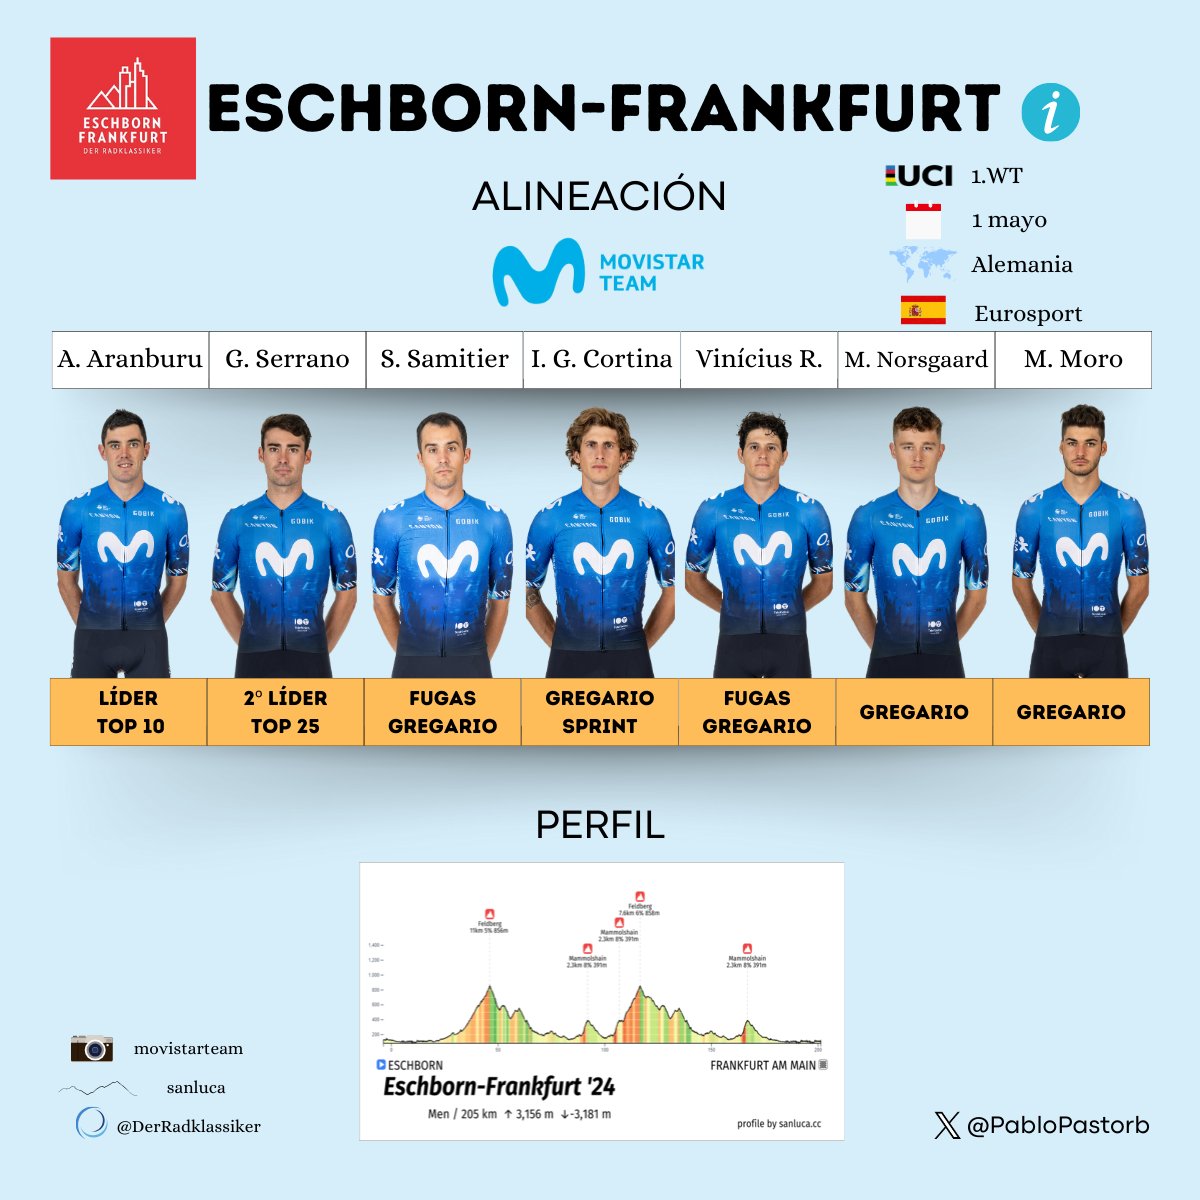 La Eschborn-Frankfurt, con el nuevo recorrido, suele ser muy vistosa.

@Movistar_Team la disputa, tras 2 años de ausencia, para sumar puntos UCI.

#Radklassiker 👇👇